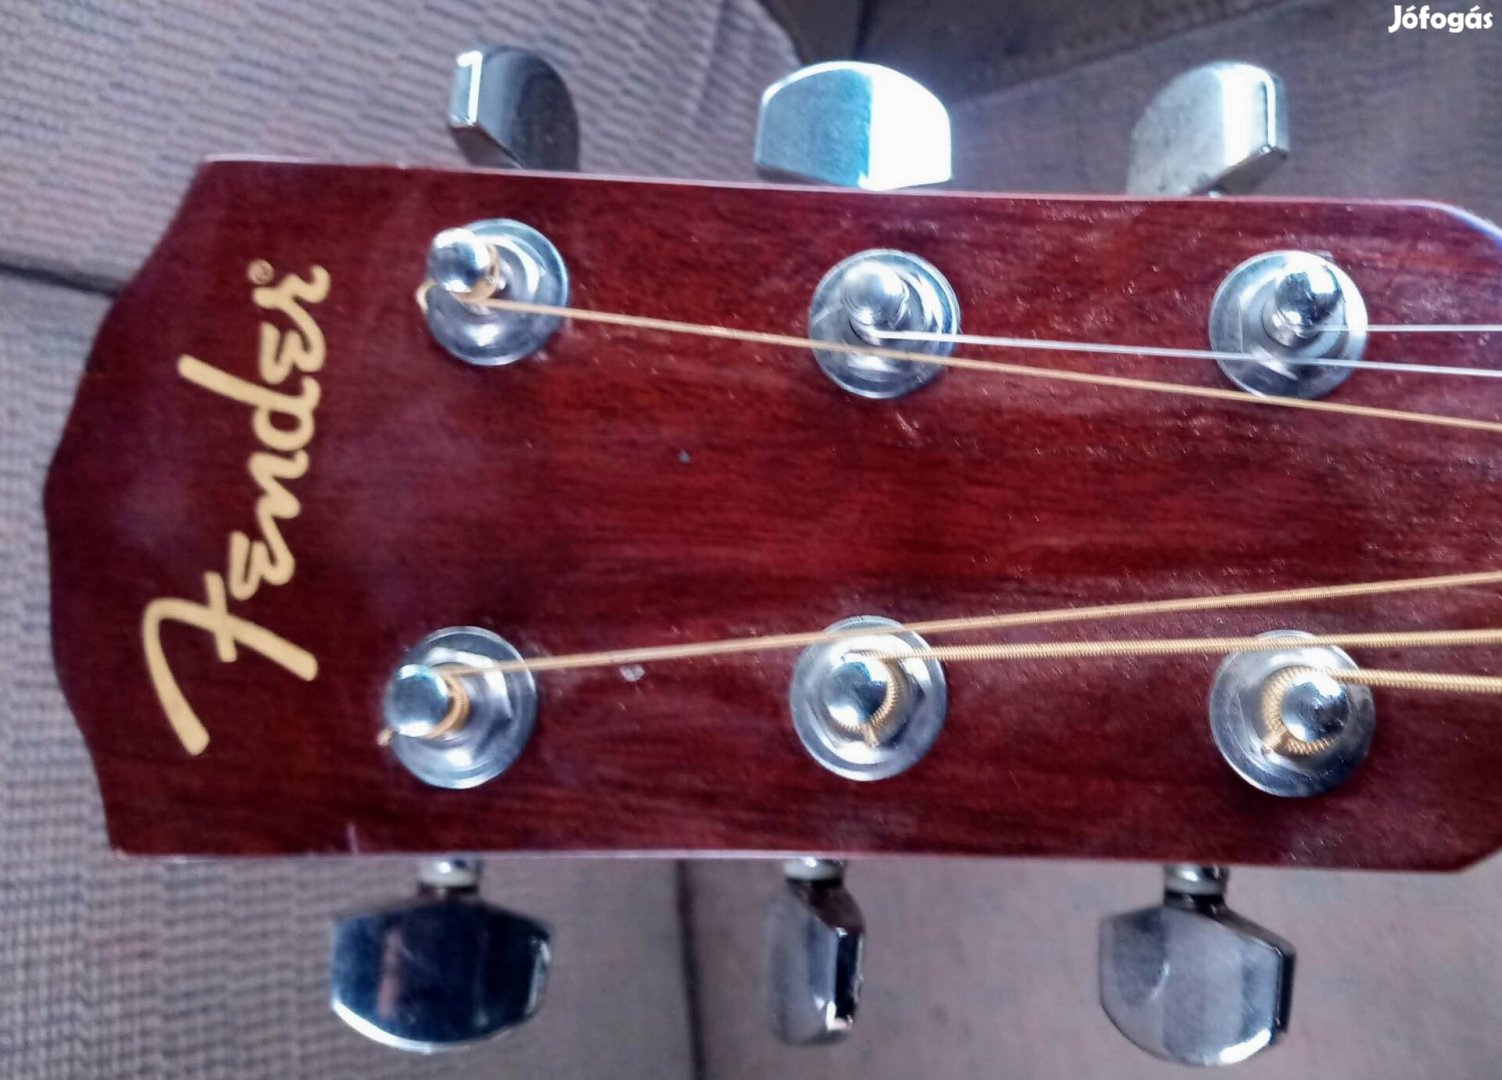 Western Series Steel Strings Acoustic Guitar!